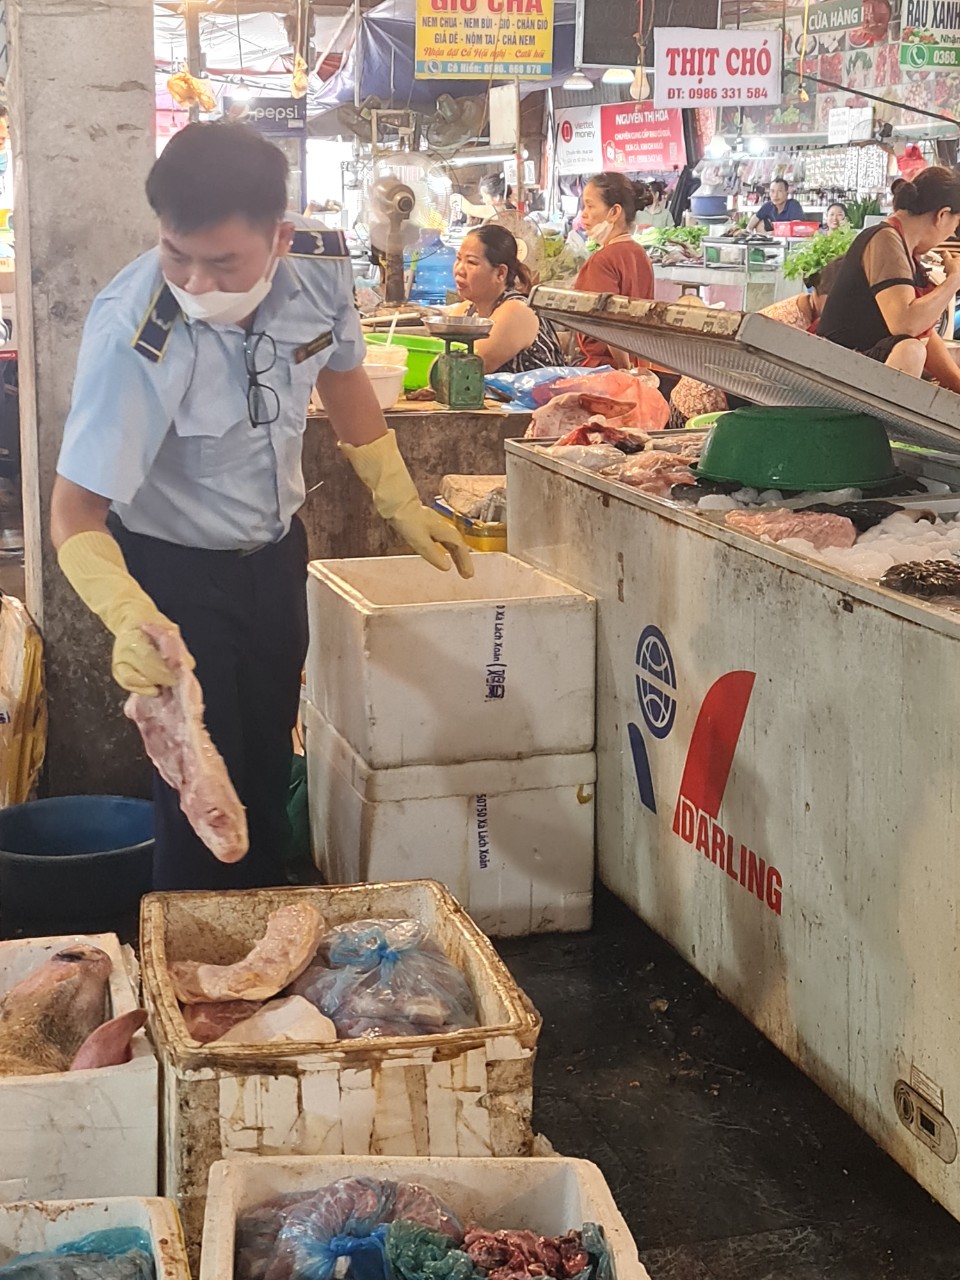 Lực lượng chức năng Thái Nguyên tiêu huỷ trên 2 tấn thịt lợn bốc mùi hôi thối  - Ảnh 1.